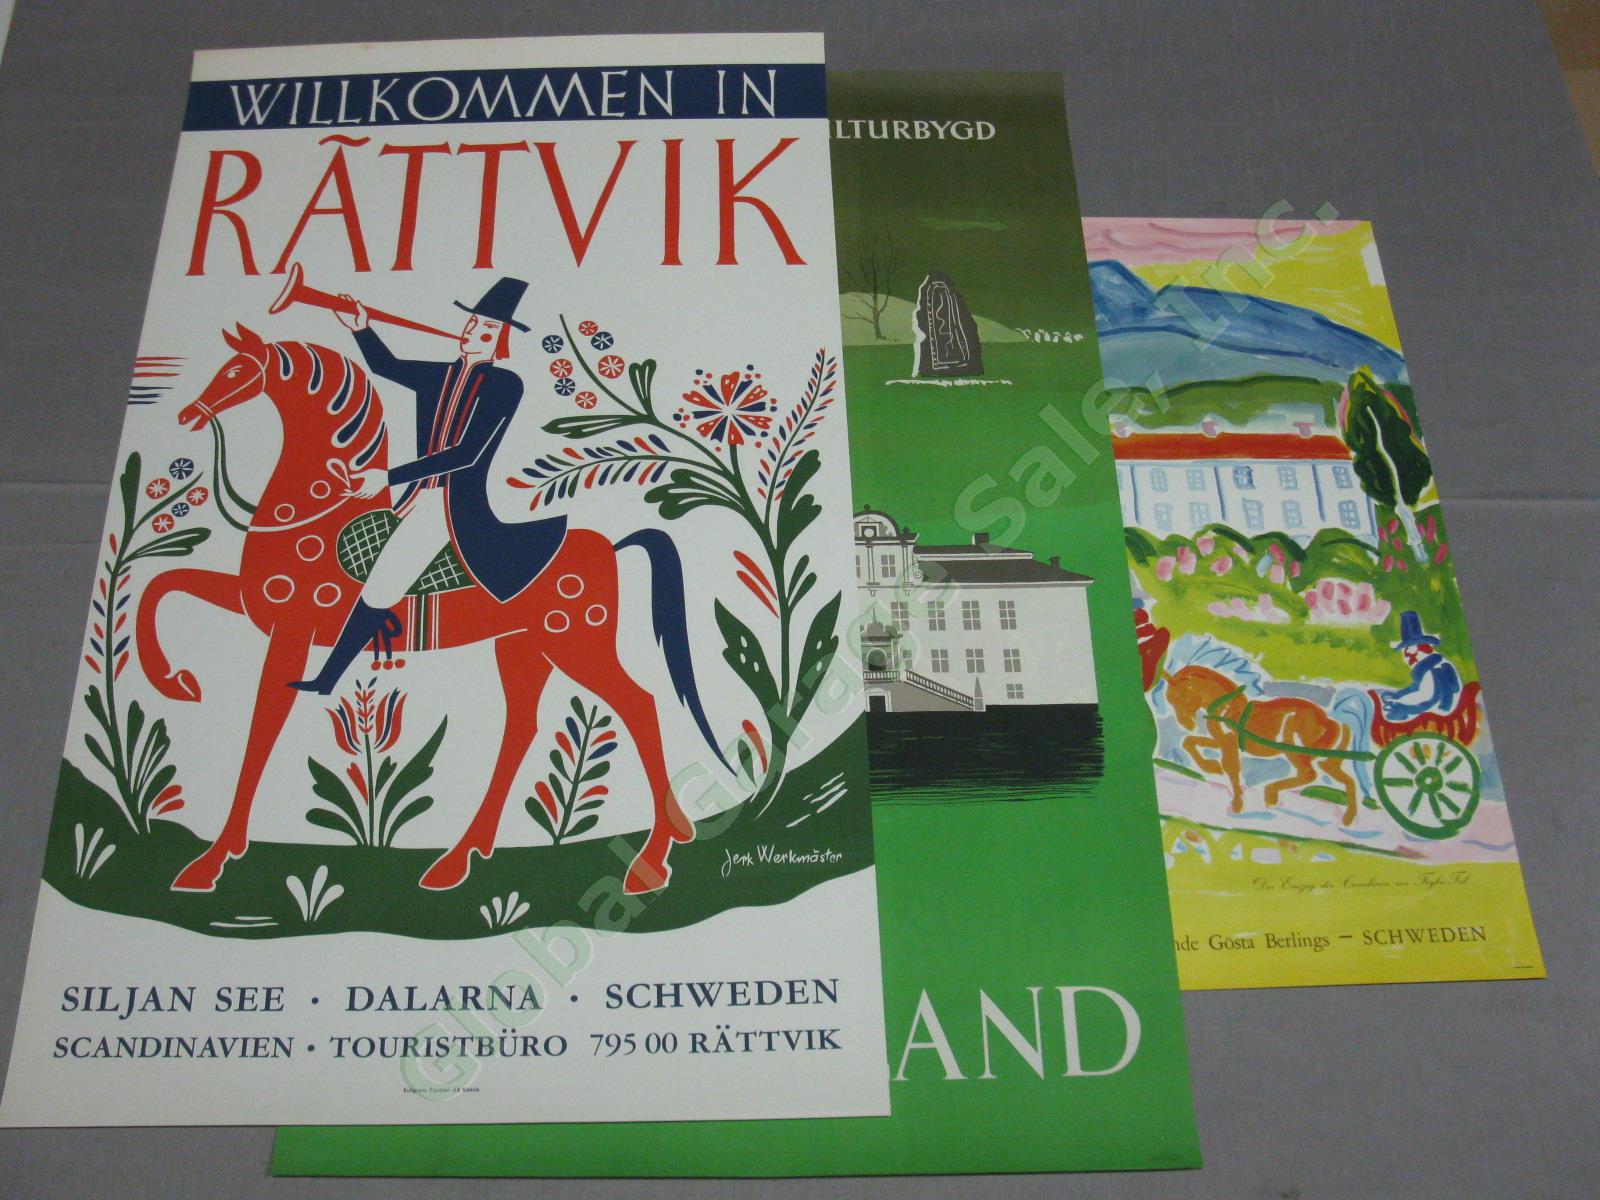 3 Vtg Swedish Sweden Travel Posters Rattvik Jerk Werkmester Vastmanland 1940s+